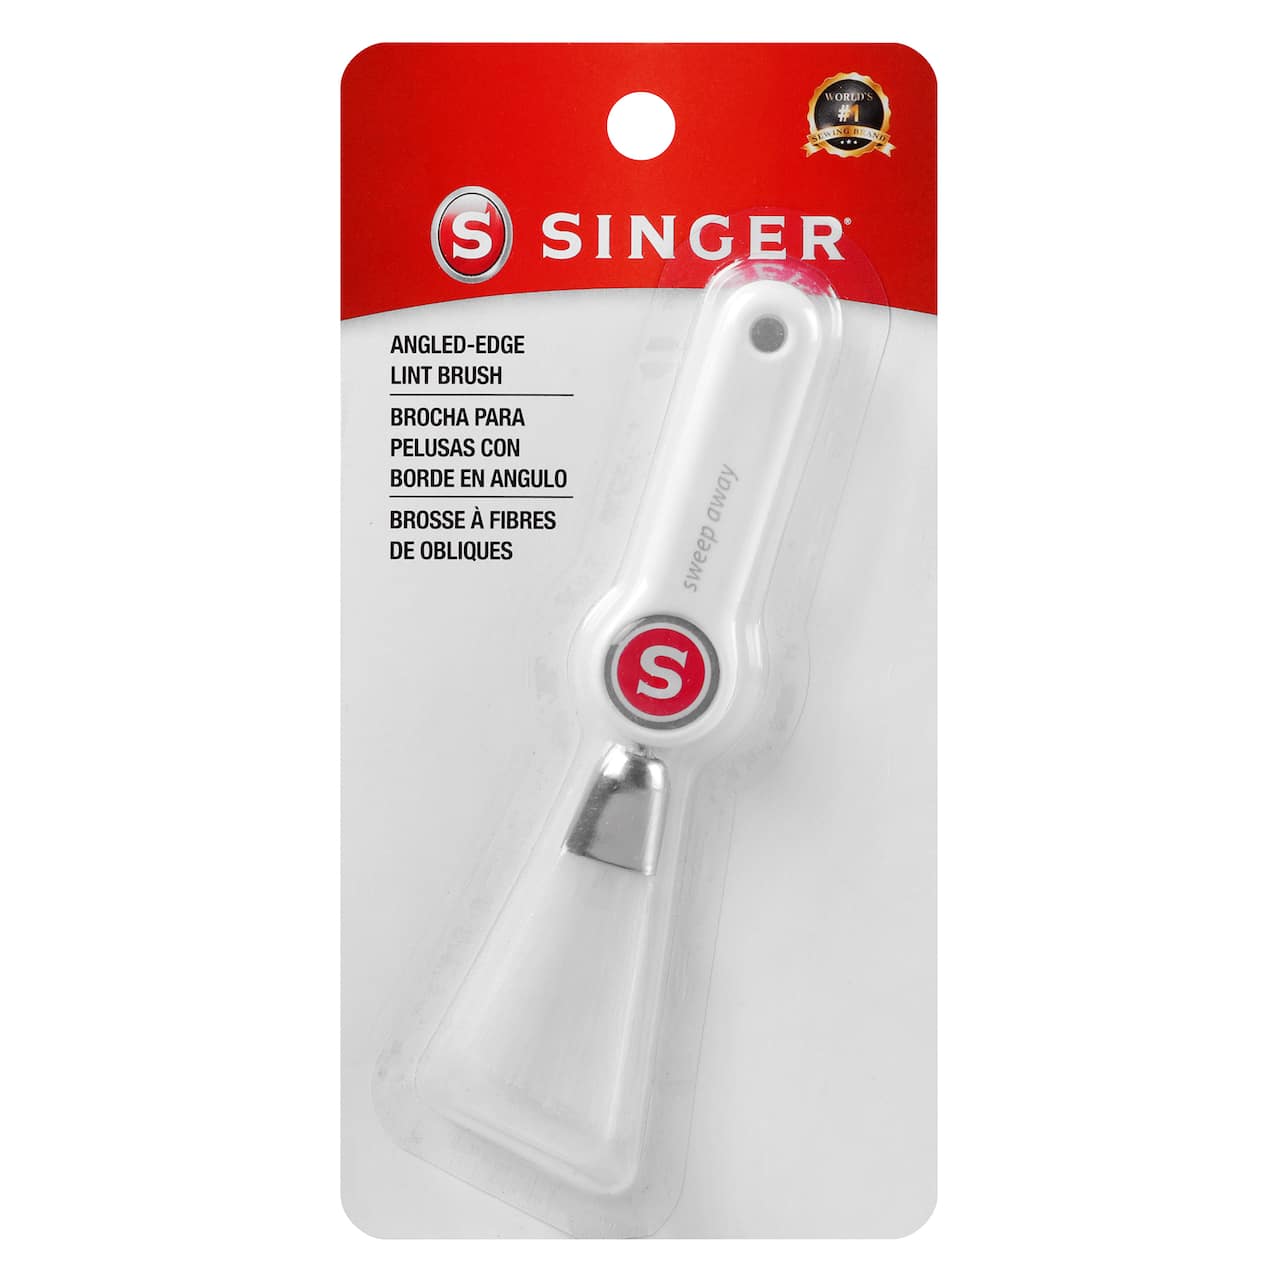 SINGER&#xAE; Angled-Edge Lint Brush